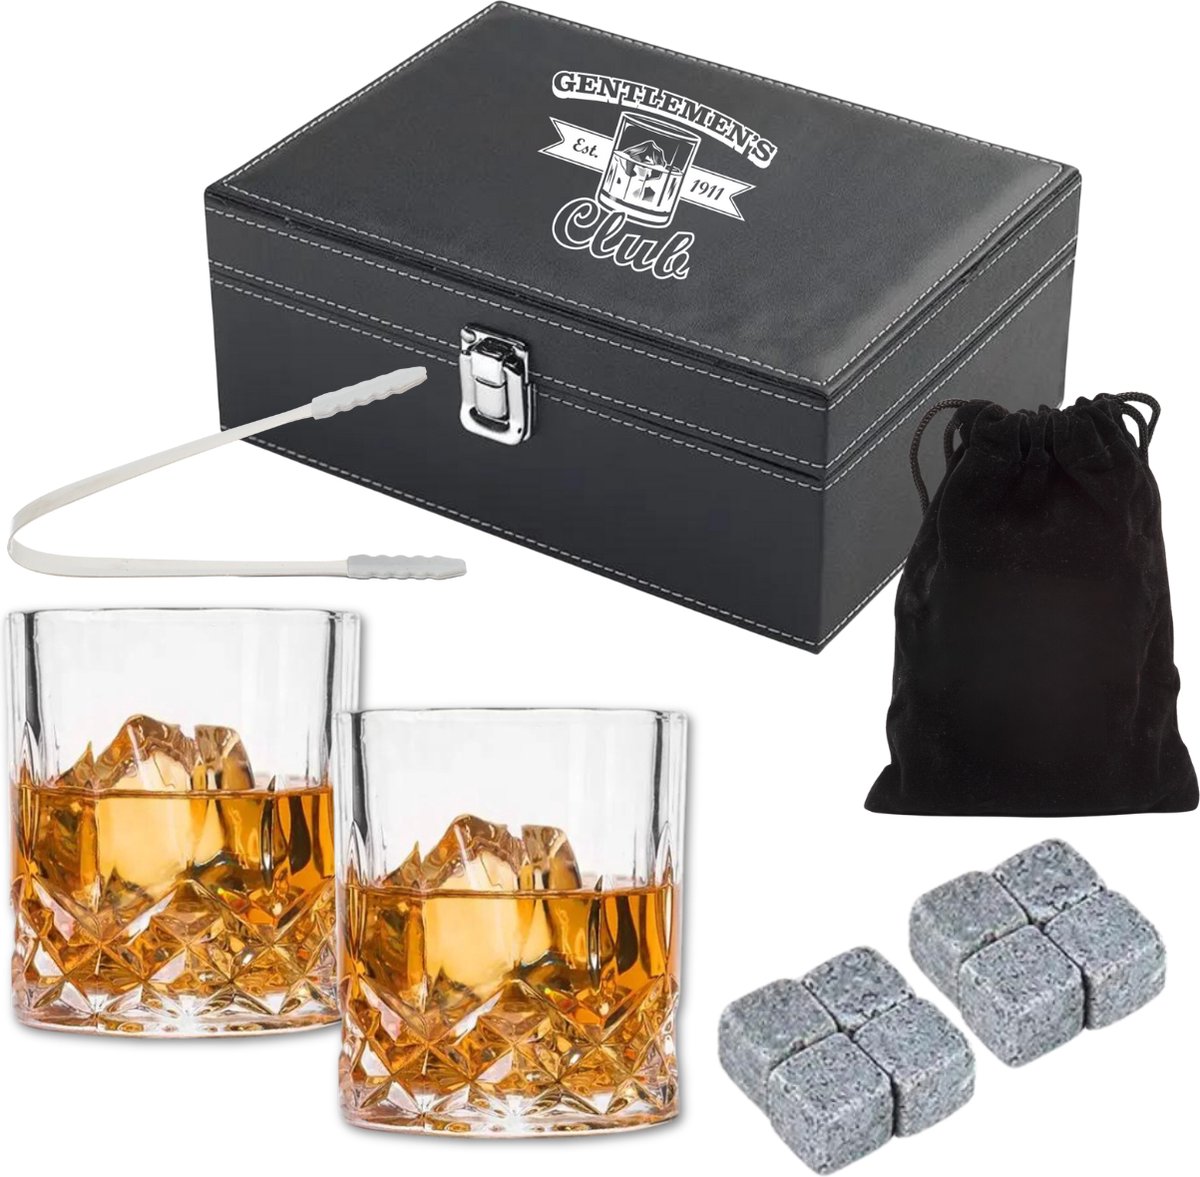 Whiskey Set - 2 Whiskey Glazen - 8 Whiskey Stones - Cadeau - Giftset - PU Leren Kist